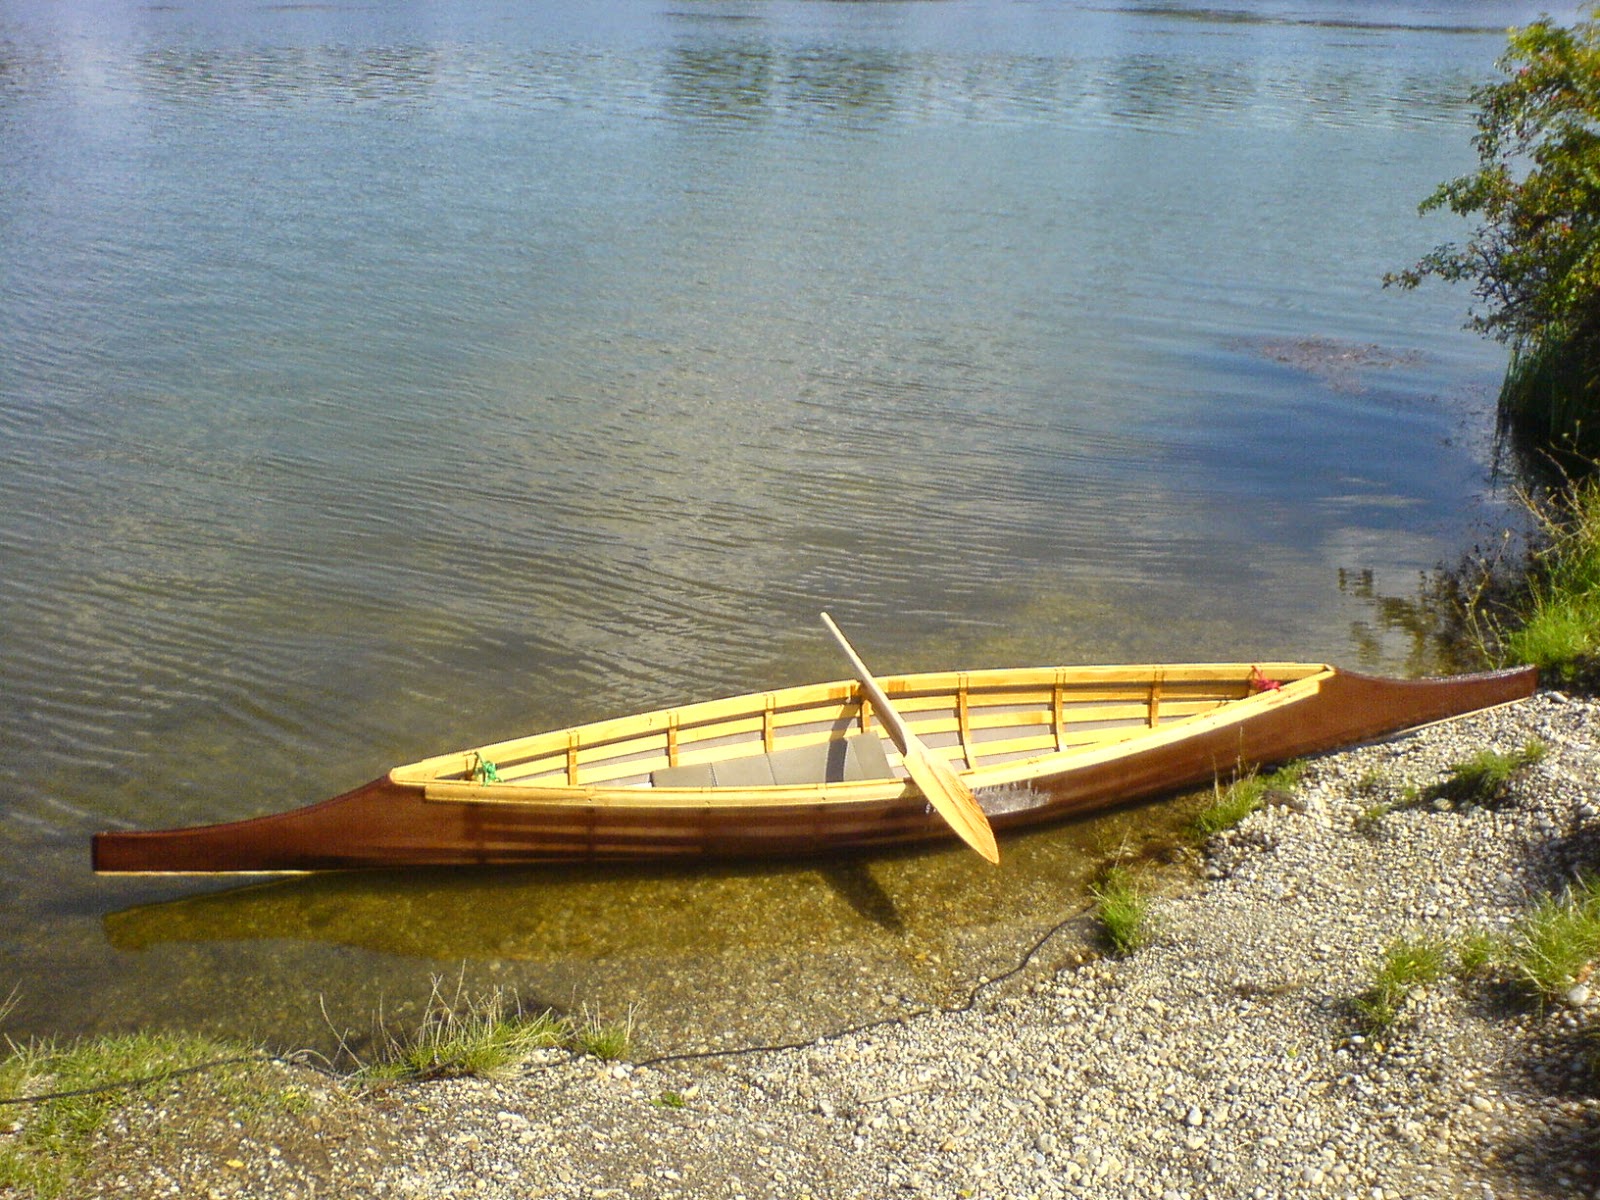 winner-kayaks: sturgeon-nosed canoe - part 3 or crossing